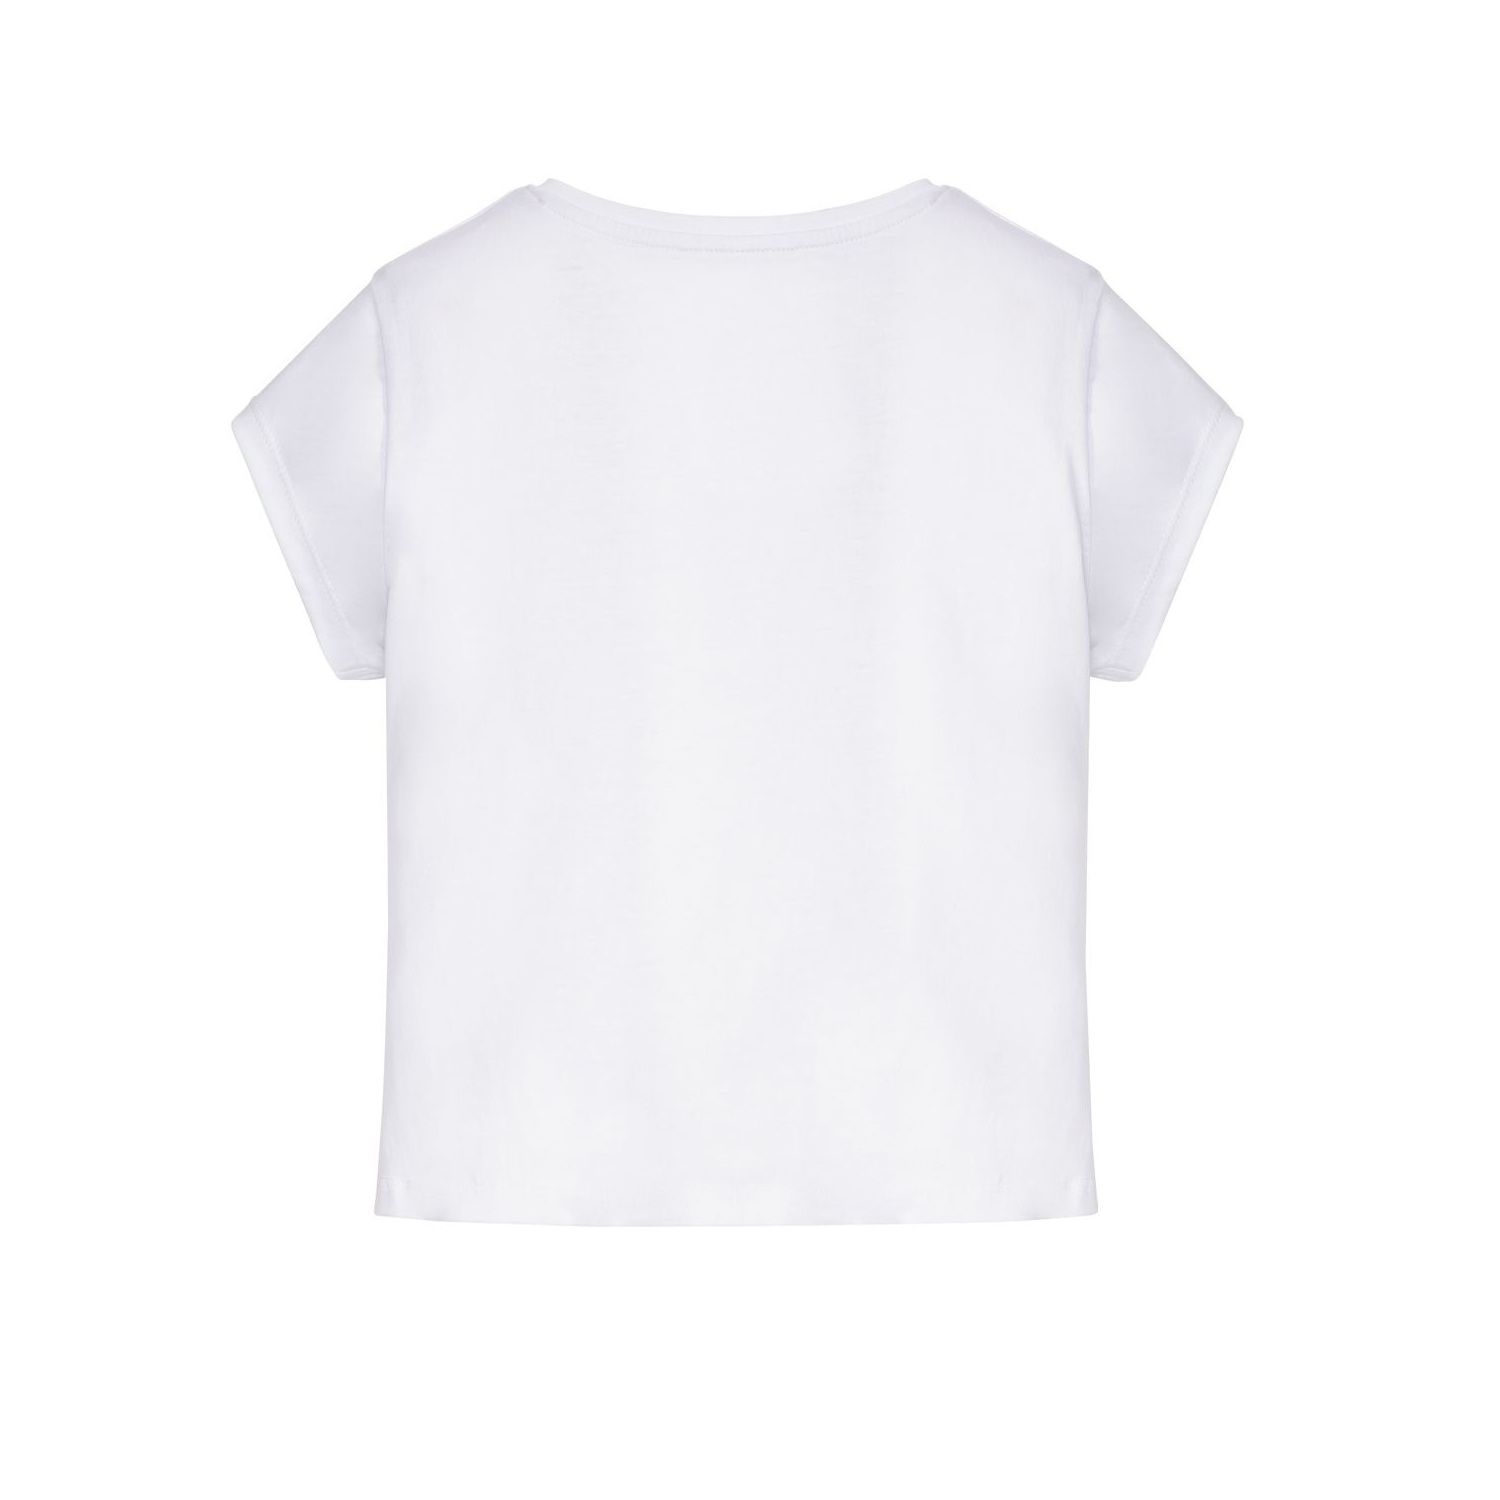 تی شرت آستین کوتاه دخترانه پیپرتس مدل گره ای کد 8339957 مجموعه 2 عددی -  - 5